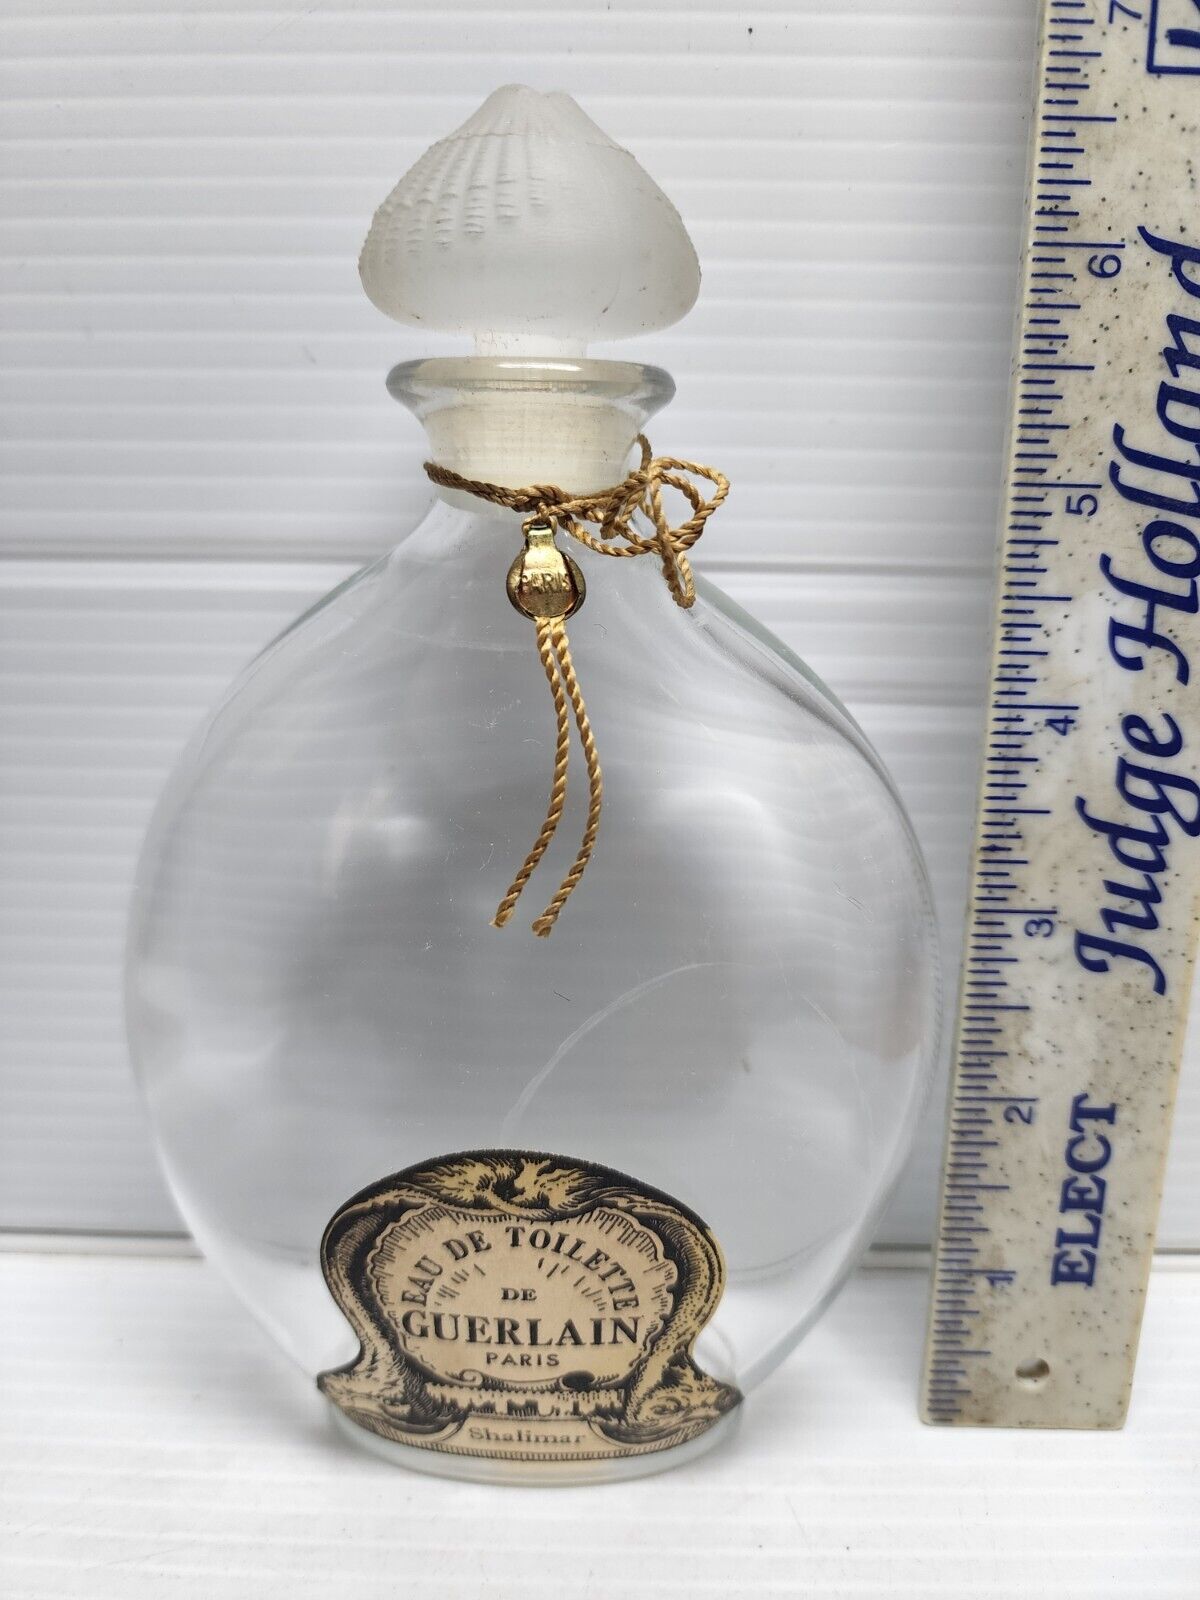 Guerlain Mitsouko Eau de Toilette Teardrop Bottle Lalique Glass Stopper Seal 